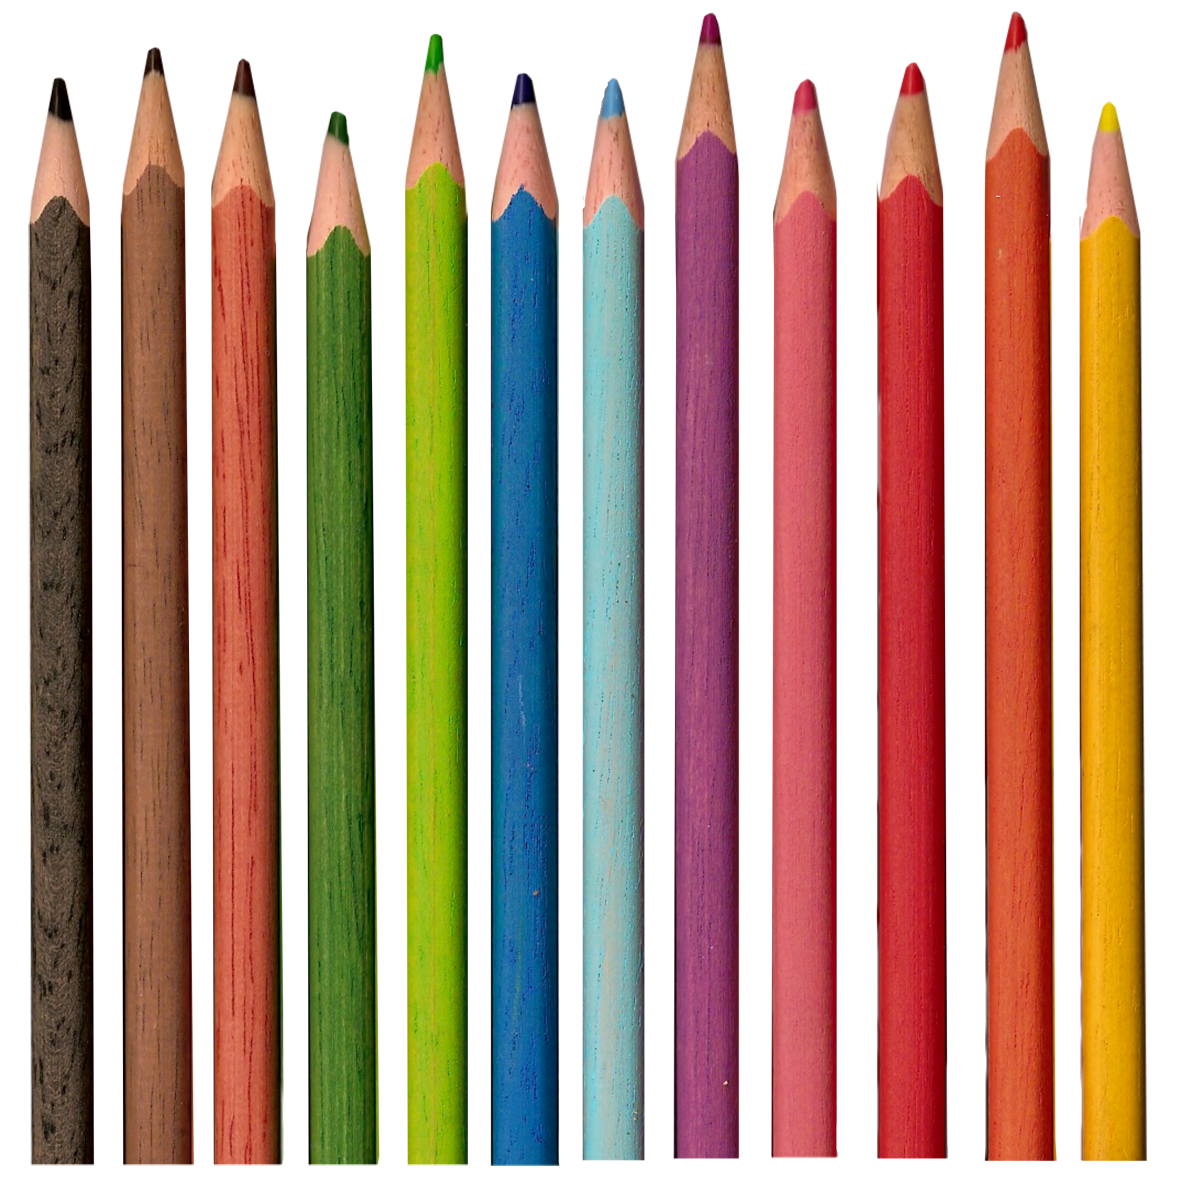 цветные карандаши PNG фото